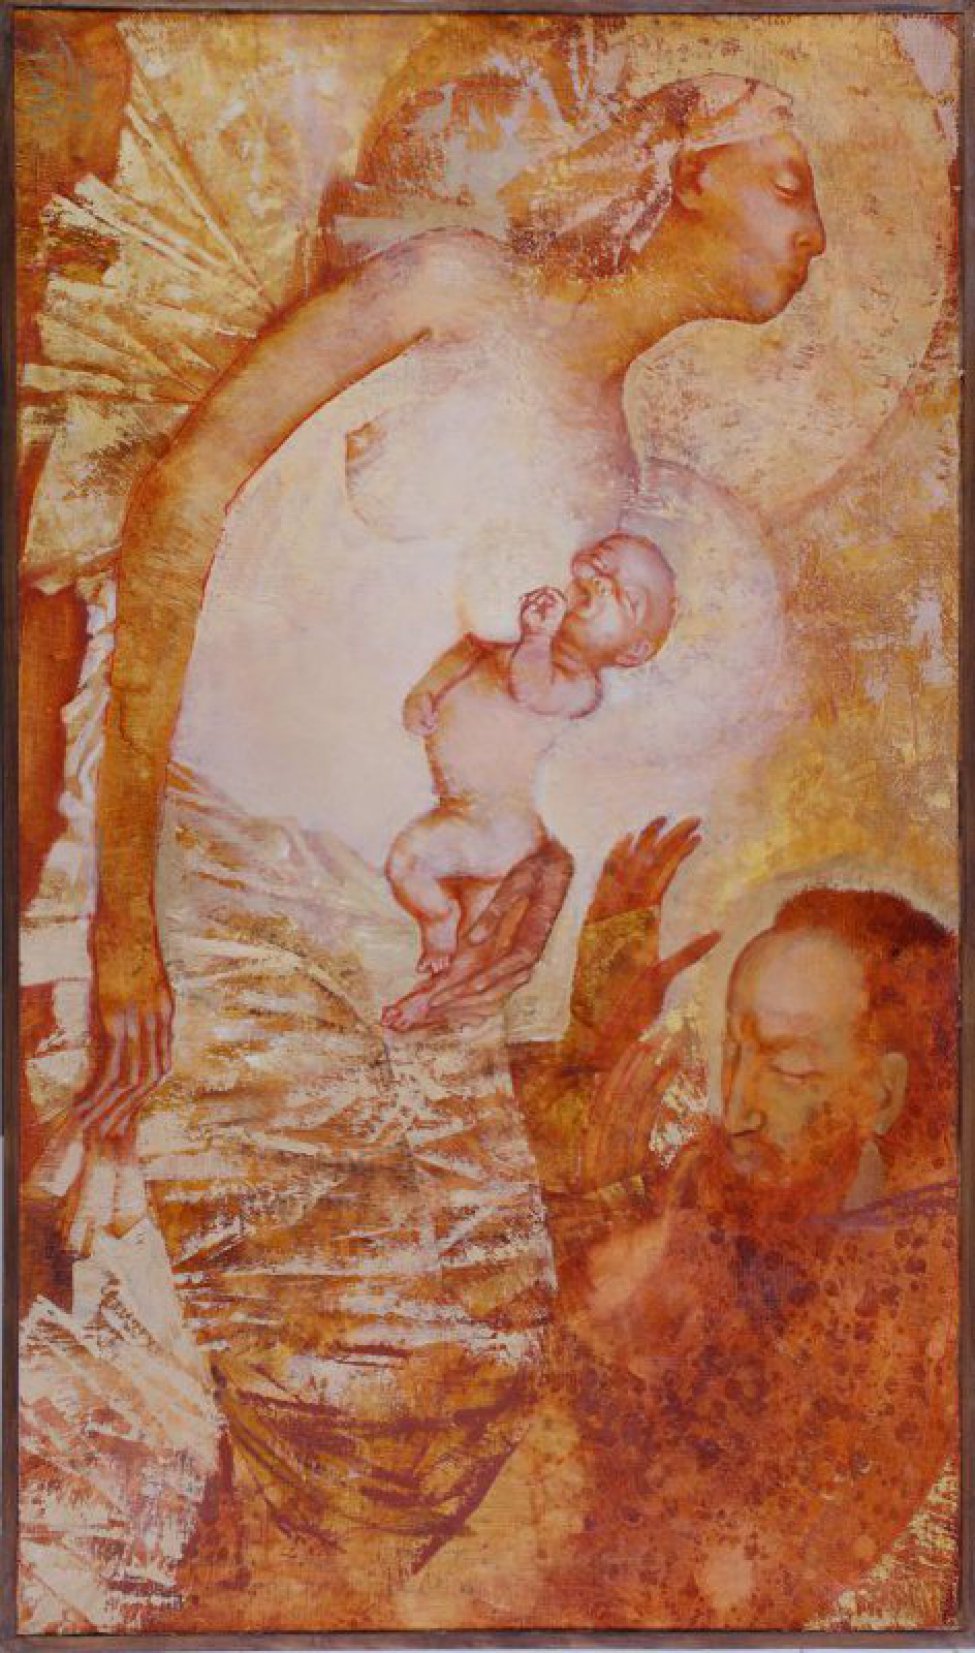 Композиция из трех фигур. На переднем плане изображение лежащей полуобнаженной женщины, кормящей грудью ребенка. Над ними - склонившаяся полуфигура мужчины с вытянутыми руками. Лицо в 3/4 повороте.  Над головами женщины и младенца - нимбы.
Обрамление: в обкладке